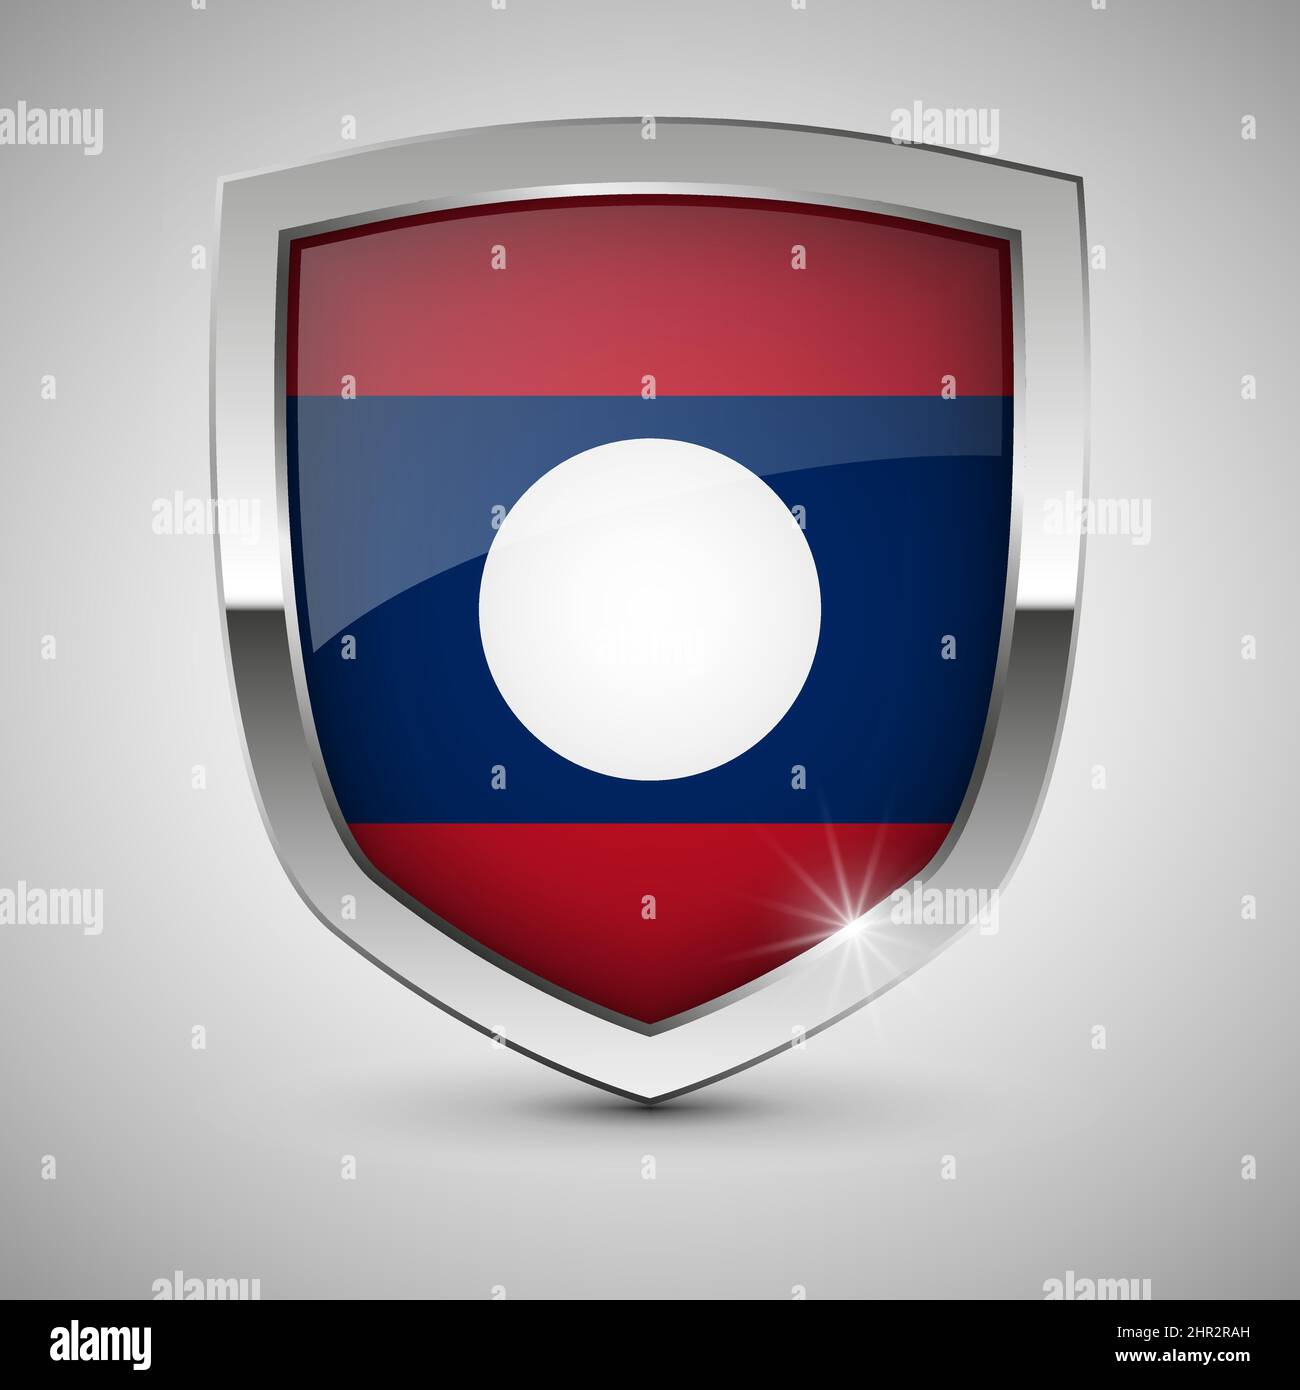 EPS10 Vektor Patriotisches Schild mit Flagge von Laos. Ein Element der Wirkung für die Verwendung, die Sie daraus machen möchten. Stock Vektor